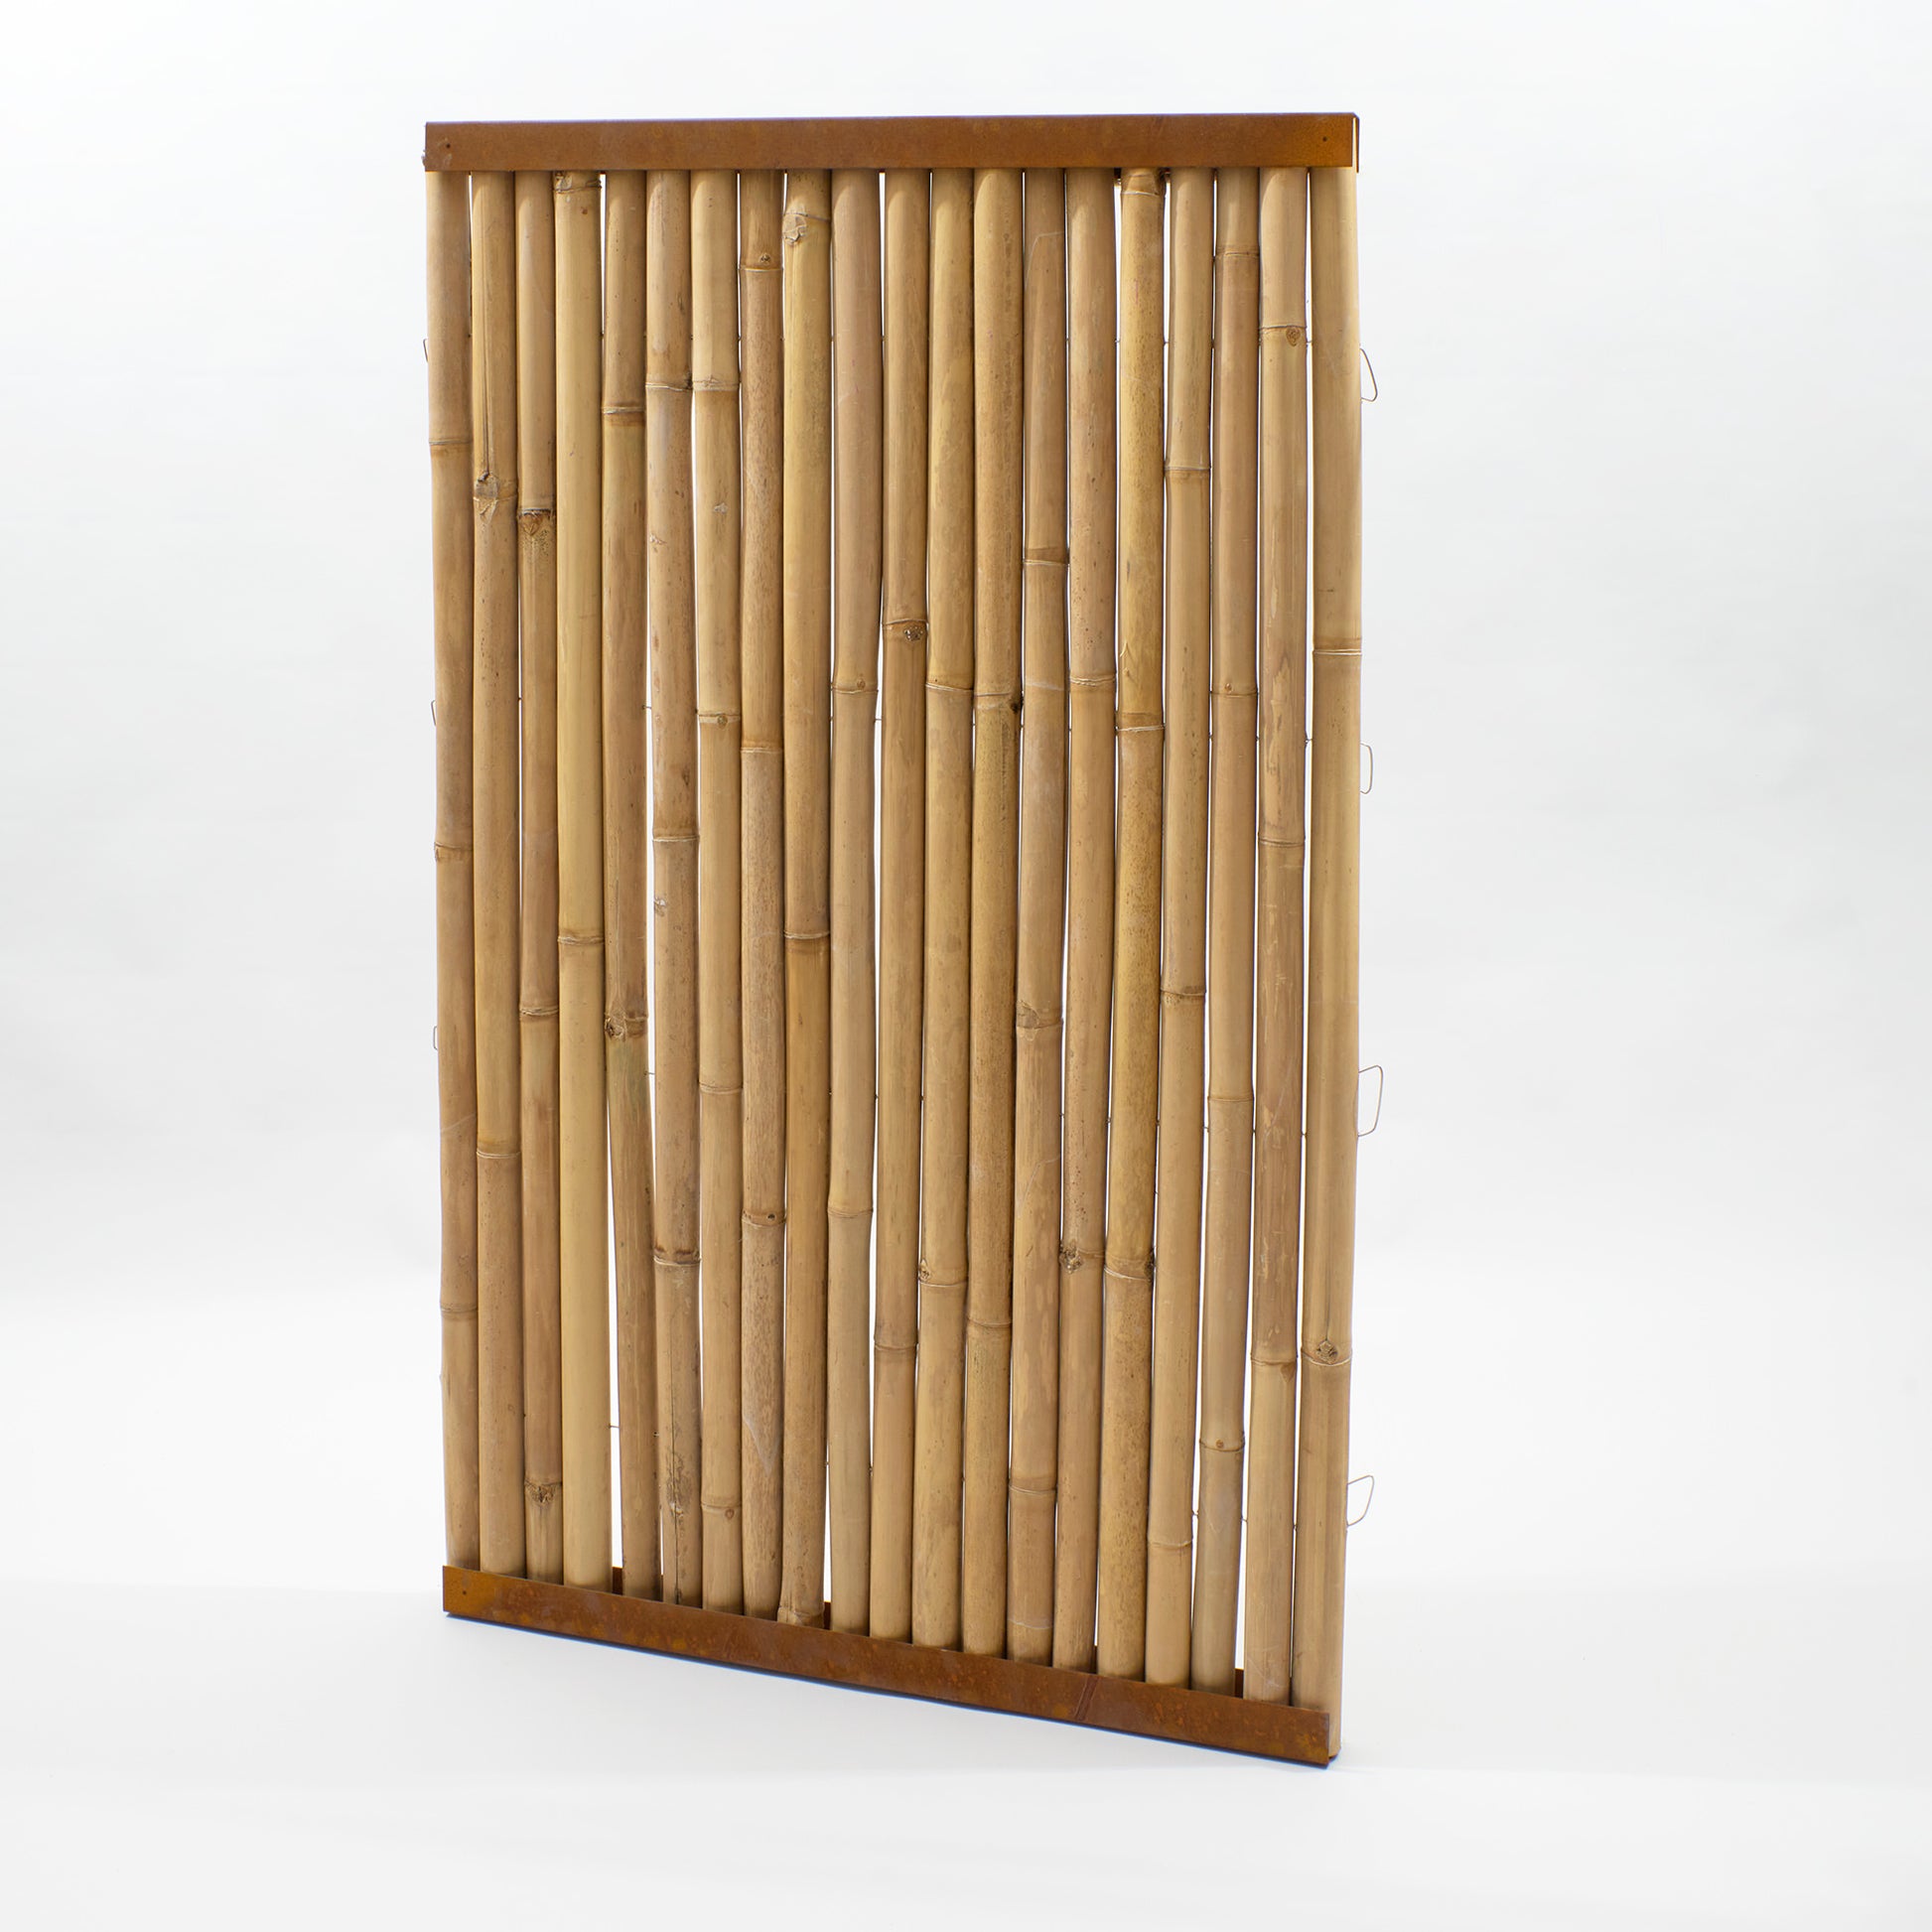 Durch Edelstahldraht verbundene beige Bambusstangen mit oberem und unterem Cortenstahl Abschlussprofil